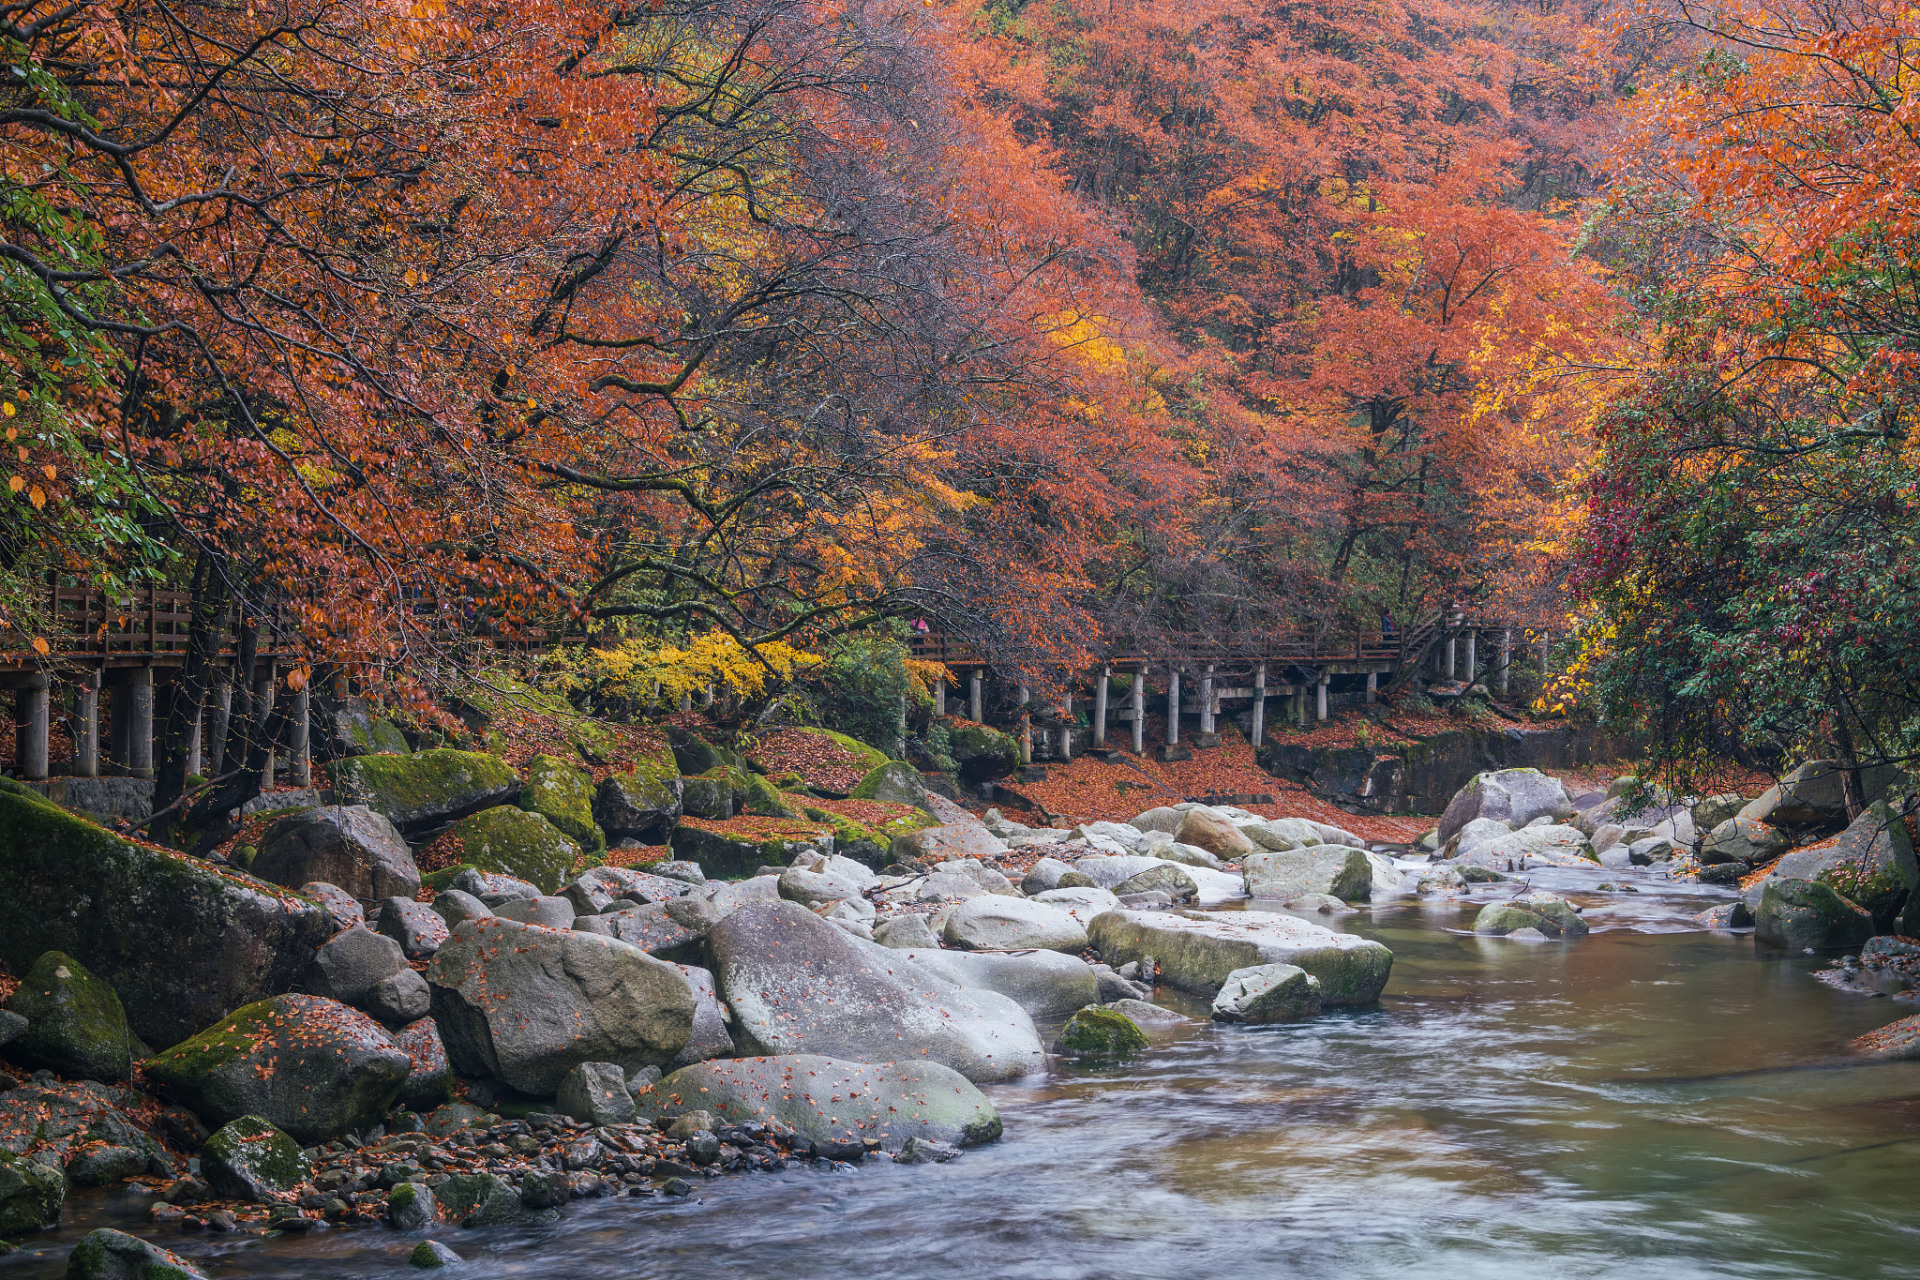 98辽宁关门山国家森林公园,位于美丽的辽宁本溪,是一个集山水之美